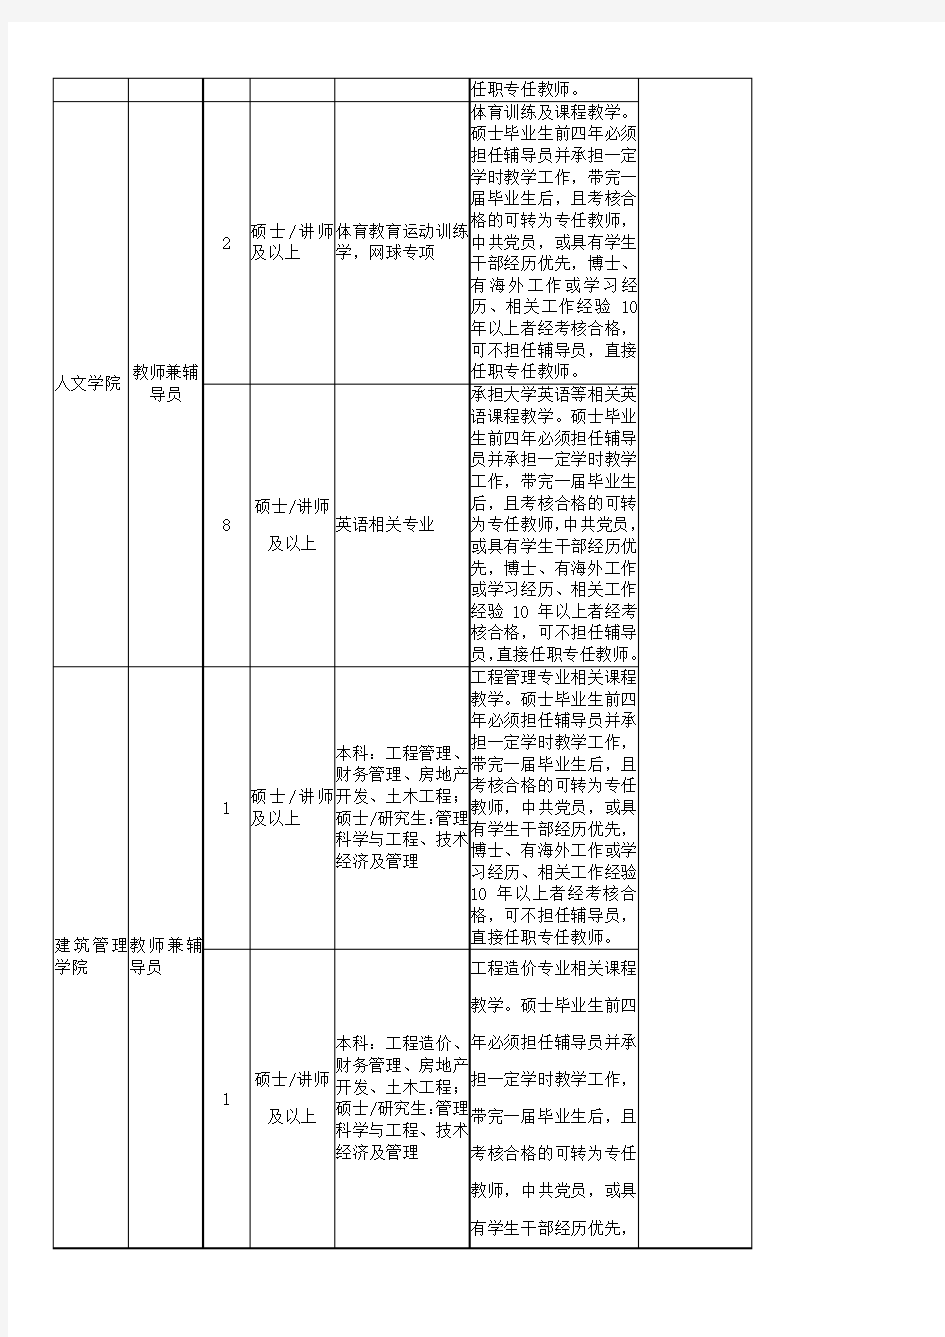 重庆大学城市科技学院2018年下半年人才招聘计划一览表